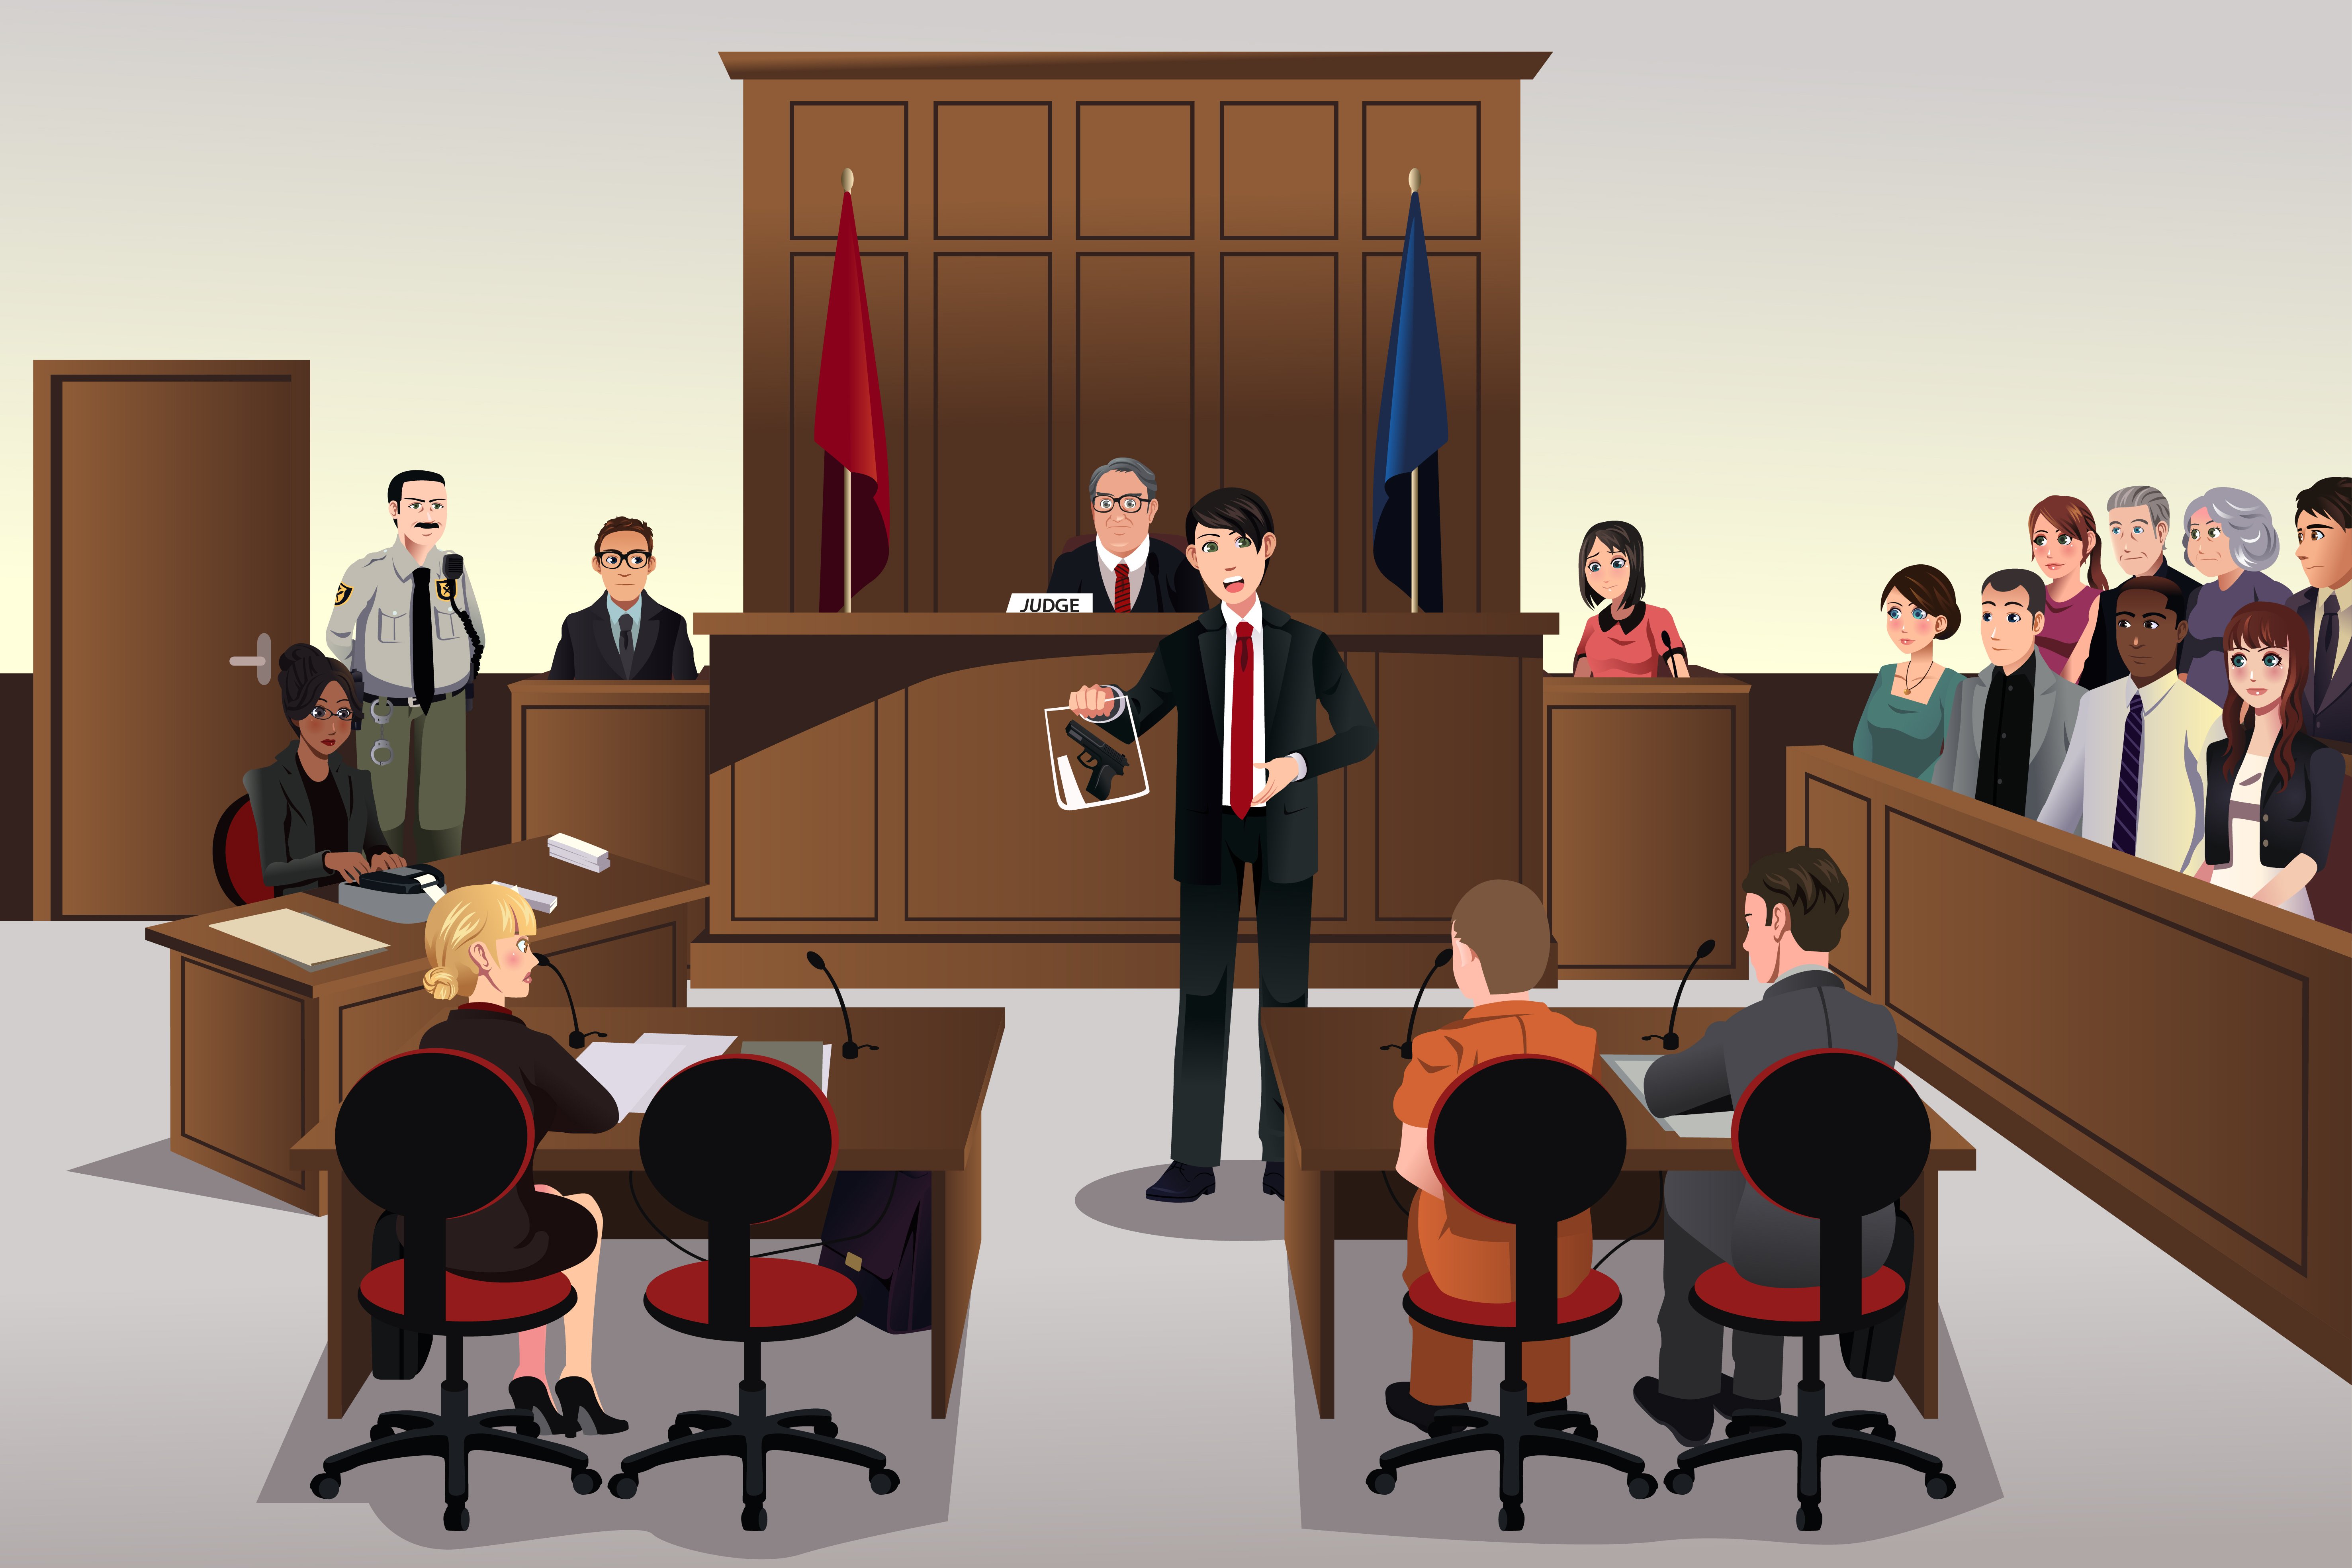 Судьи спорят. Судебное заседание иллюстрации. Стороны в суде. Судебное заседание Гражданский процесс. Адвокат на судебном заседании.